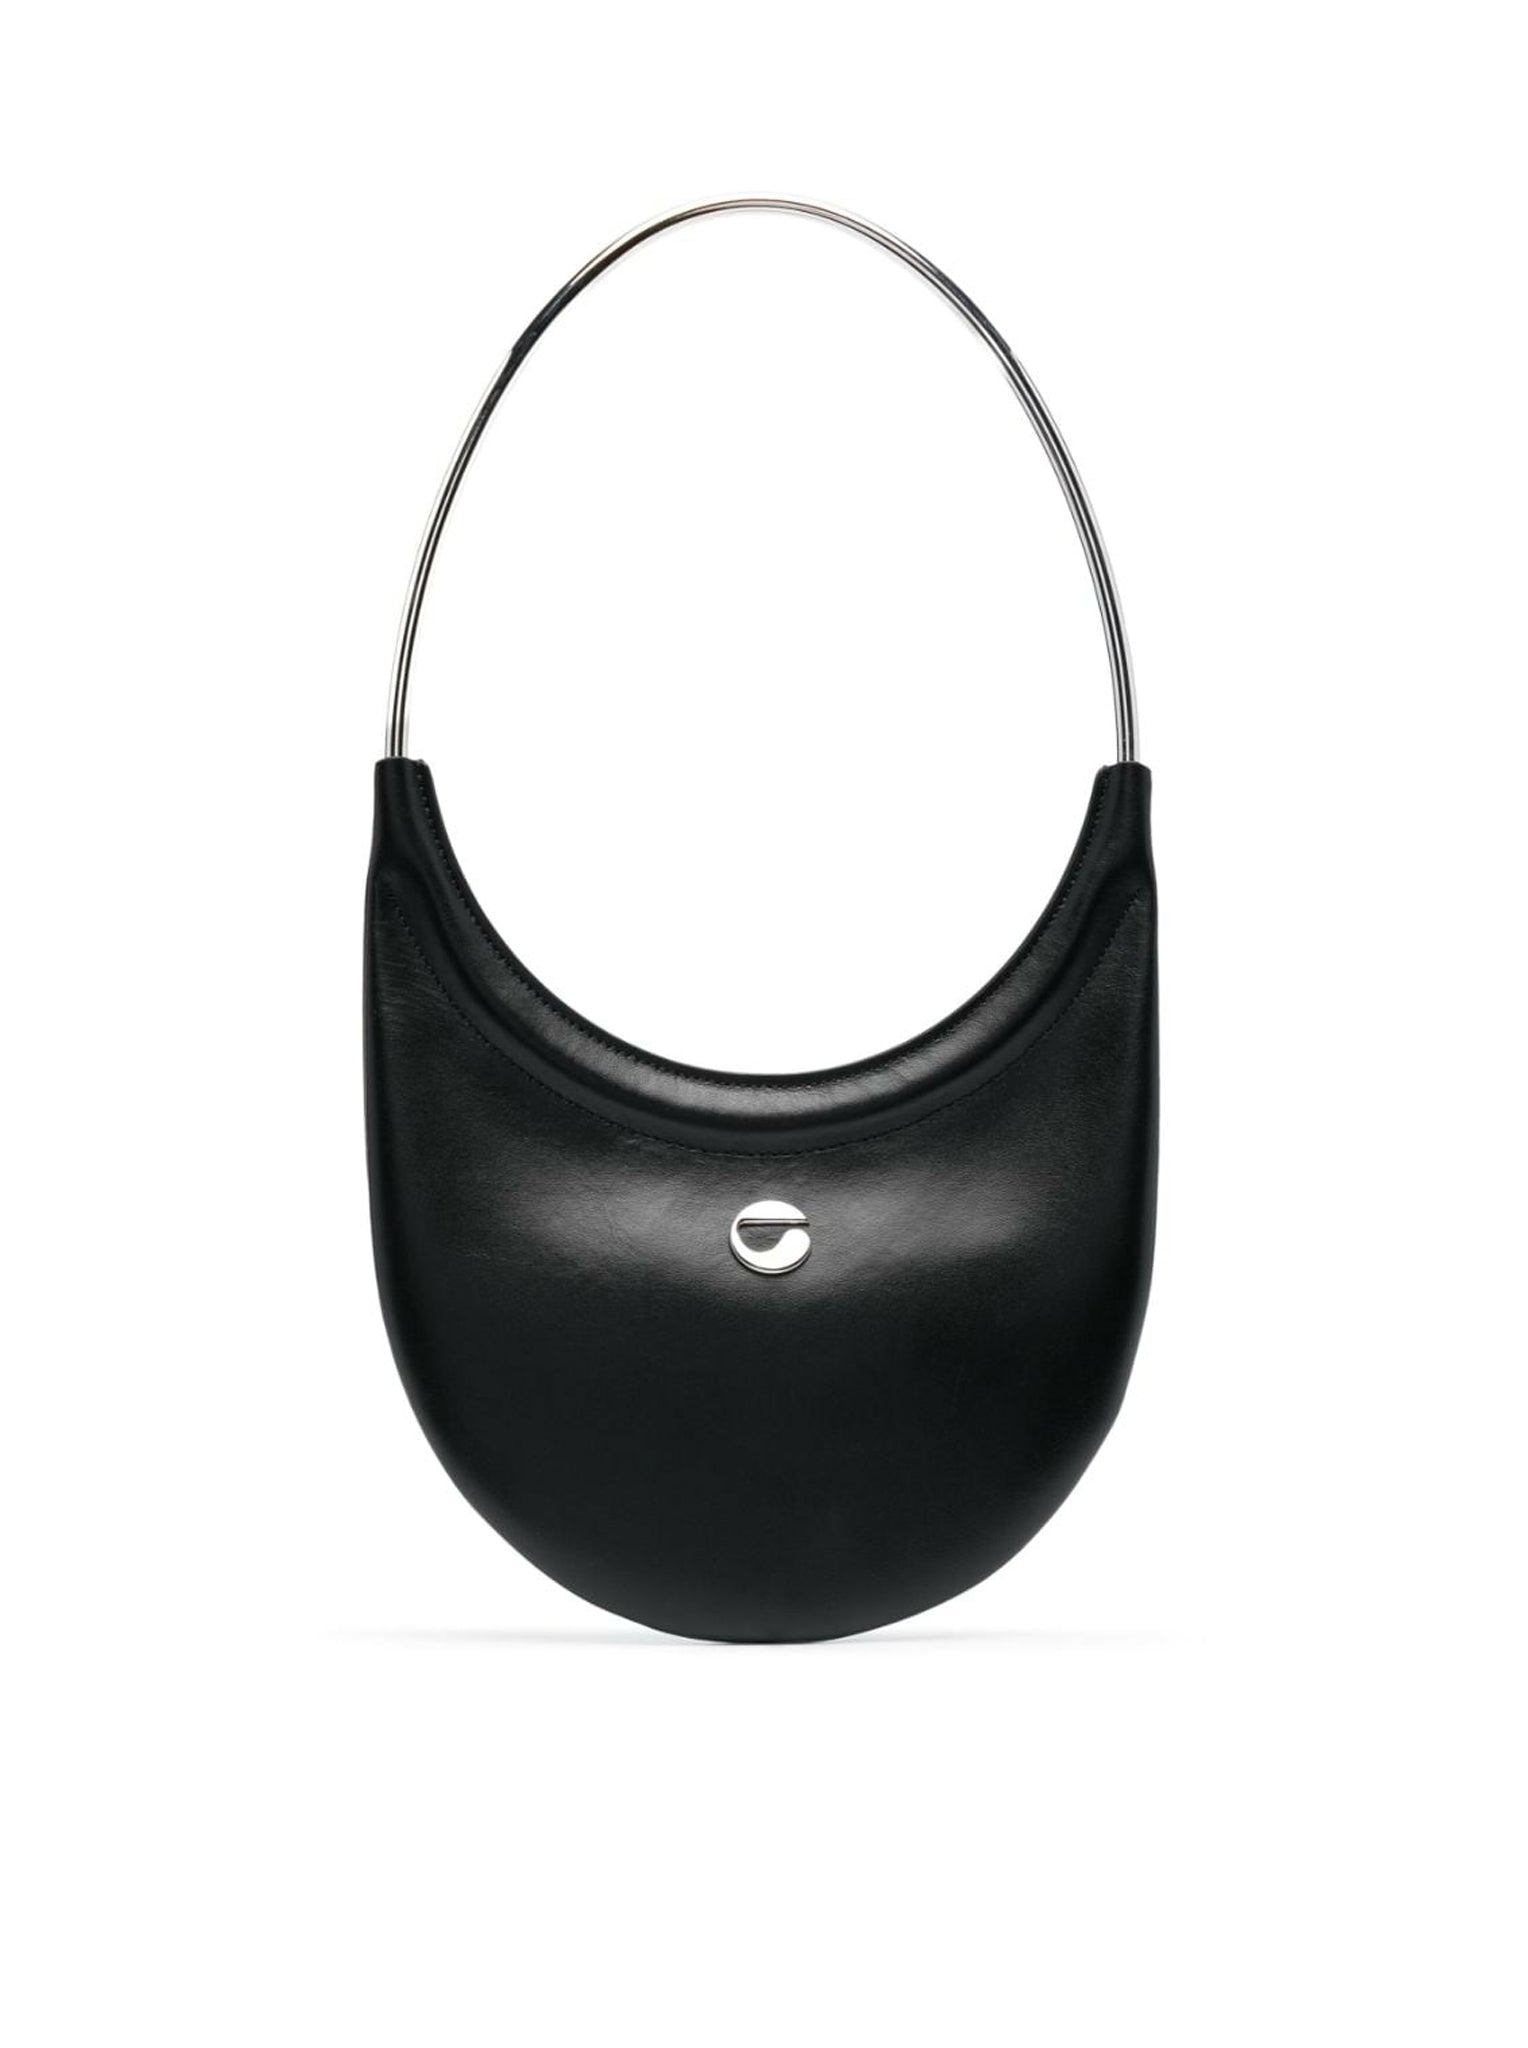 Ring Swipe leather shoulder bag